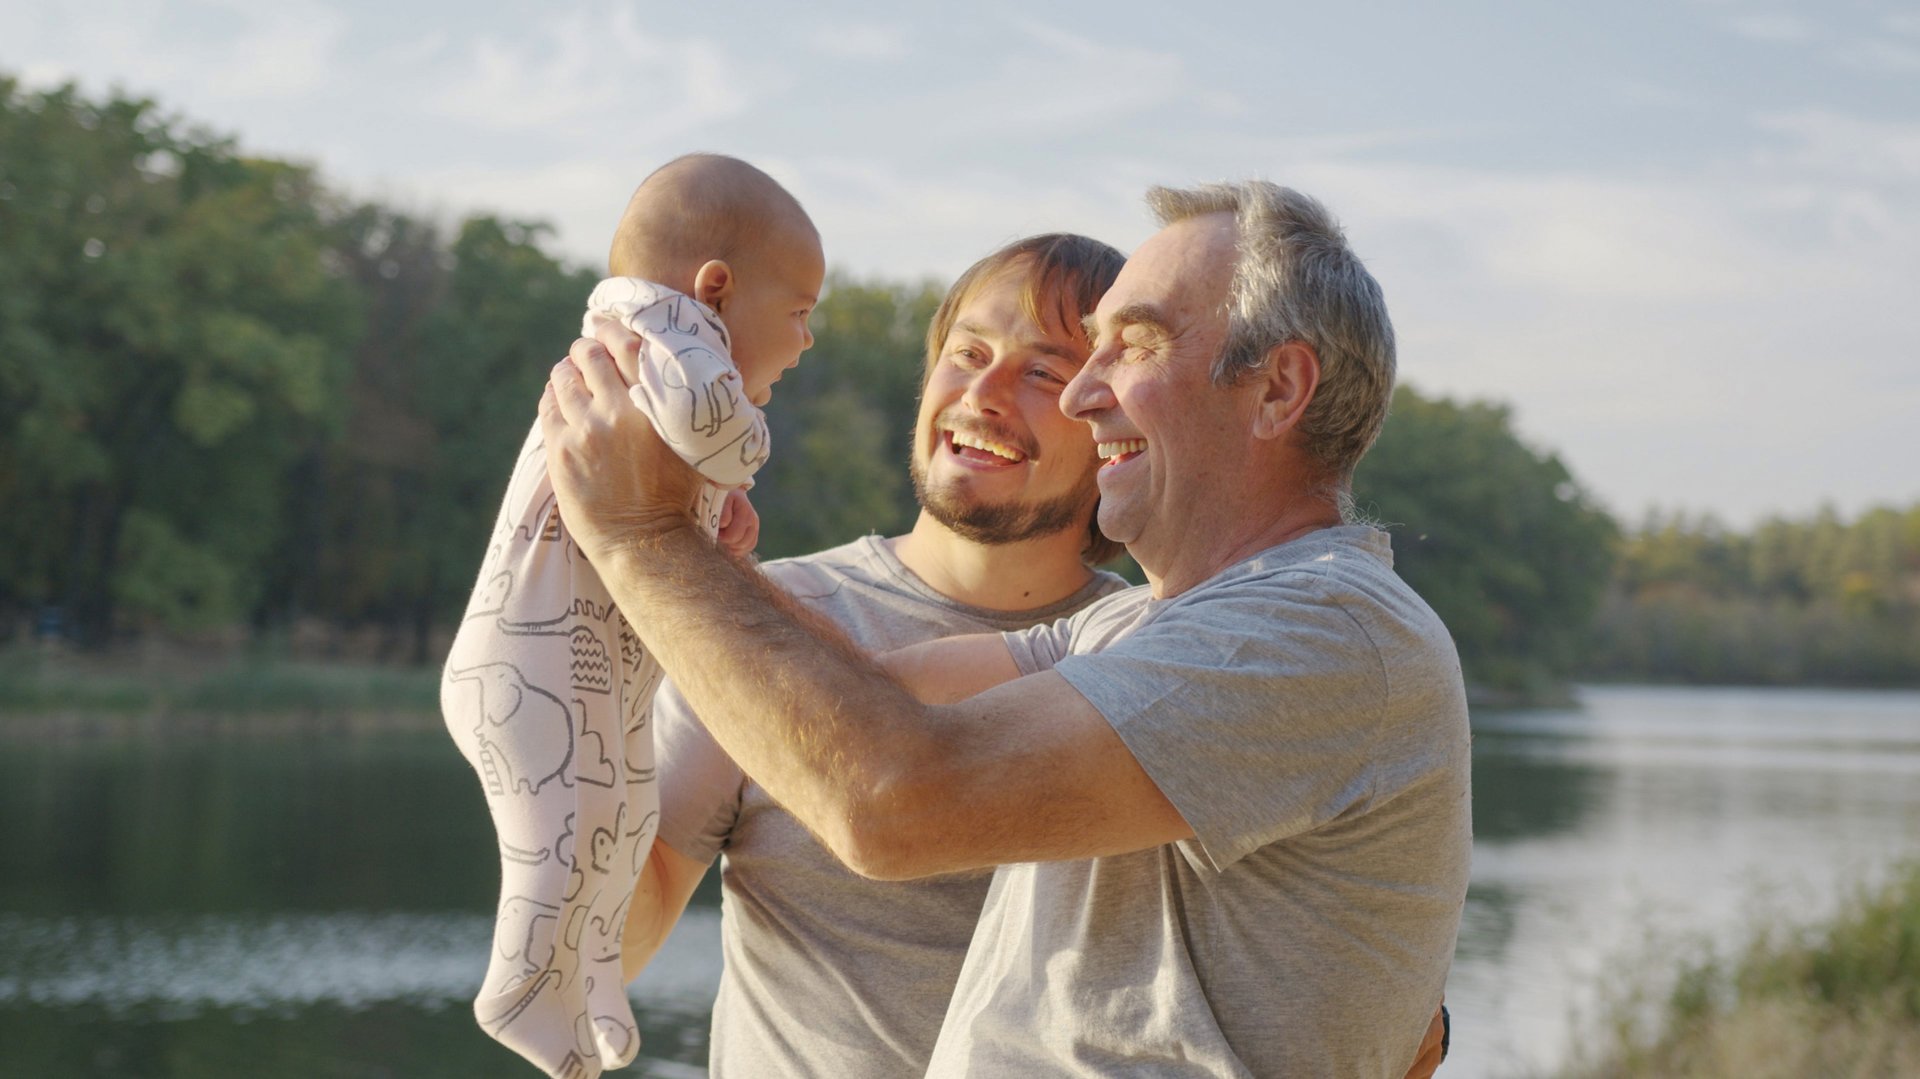 Dziadek podnosi dziecko do gory usmiechajac się wraz z tata